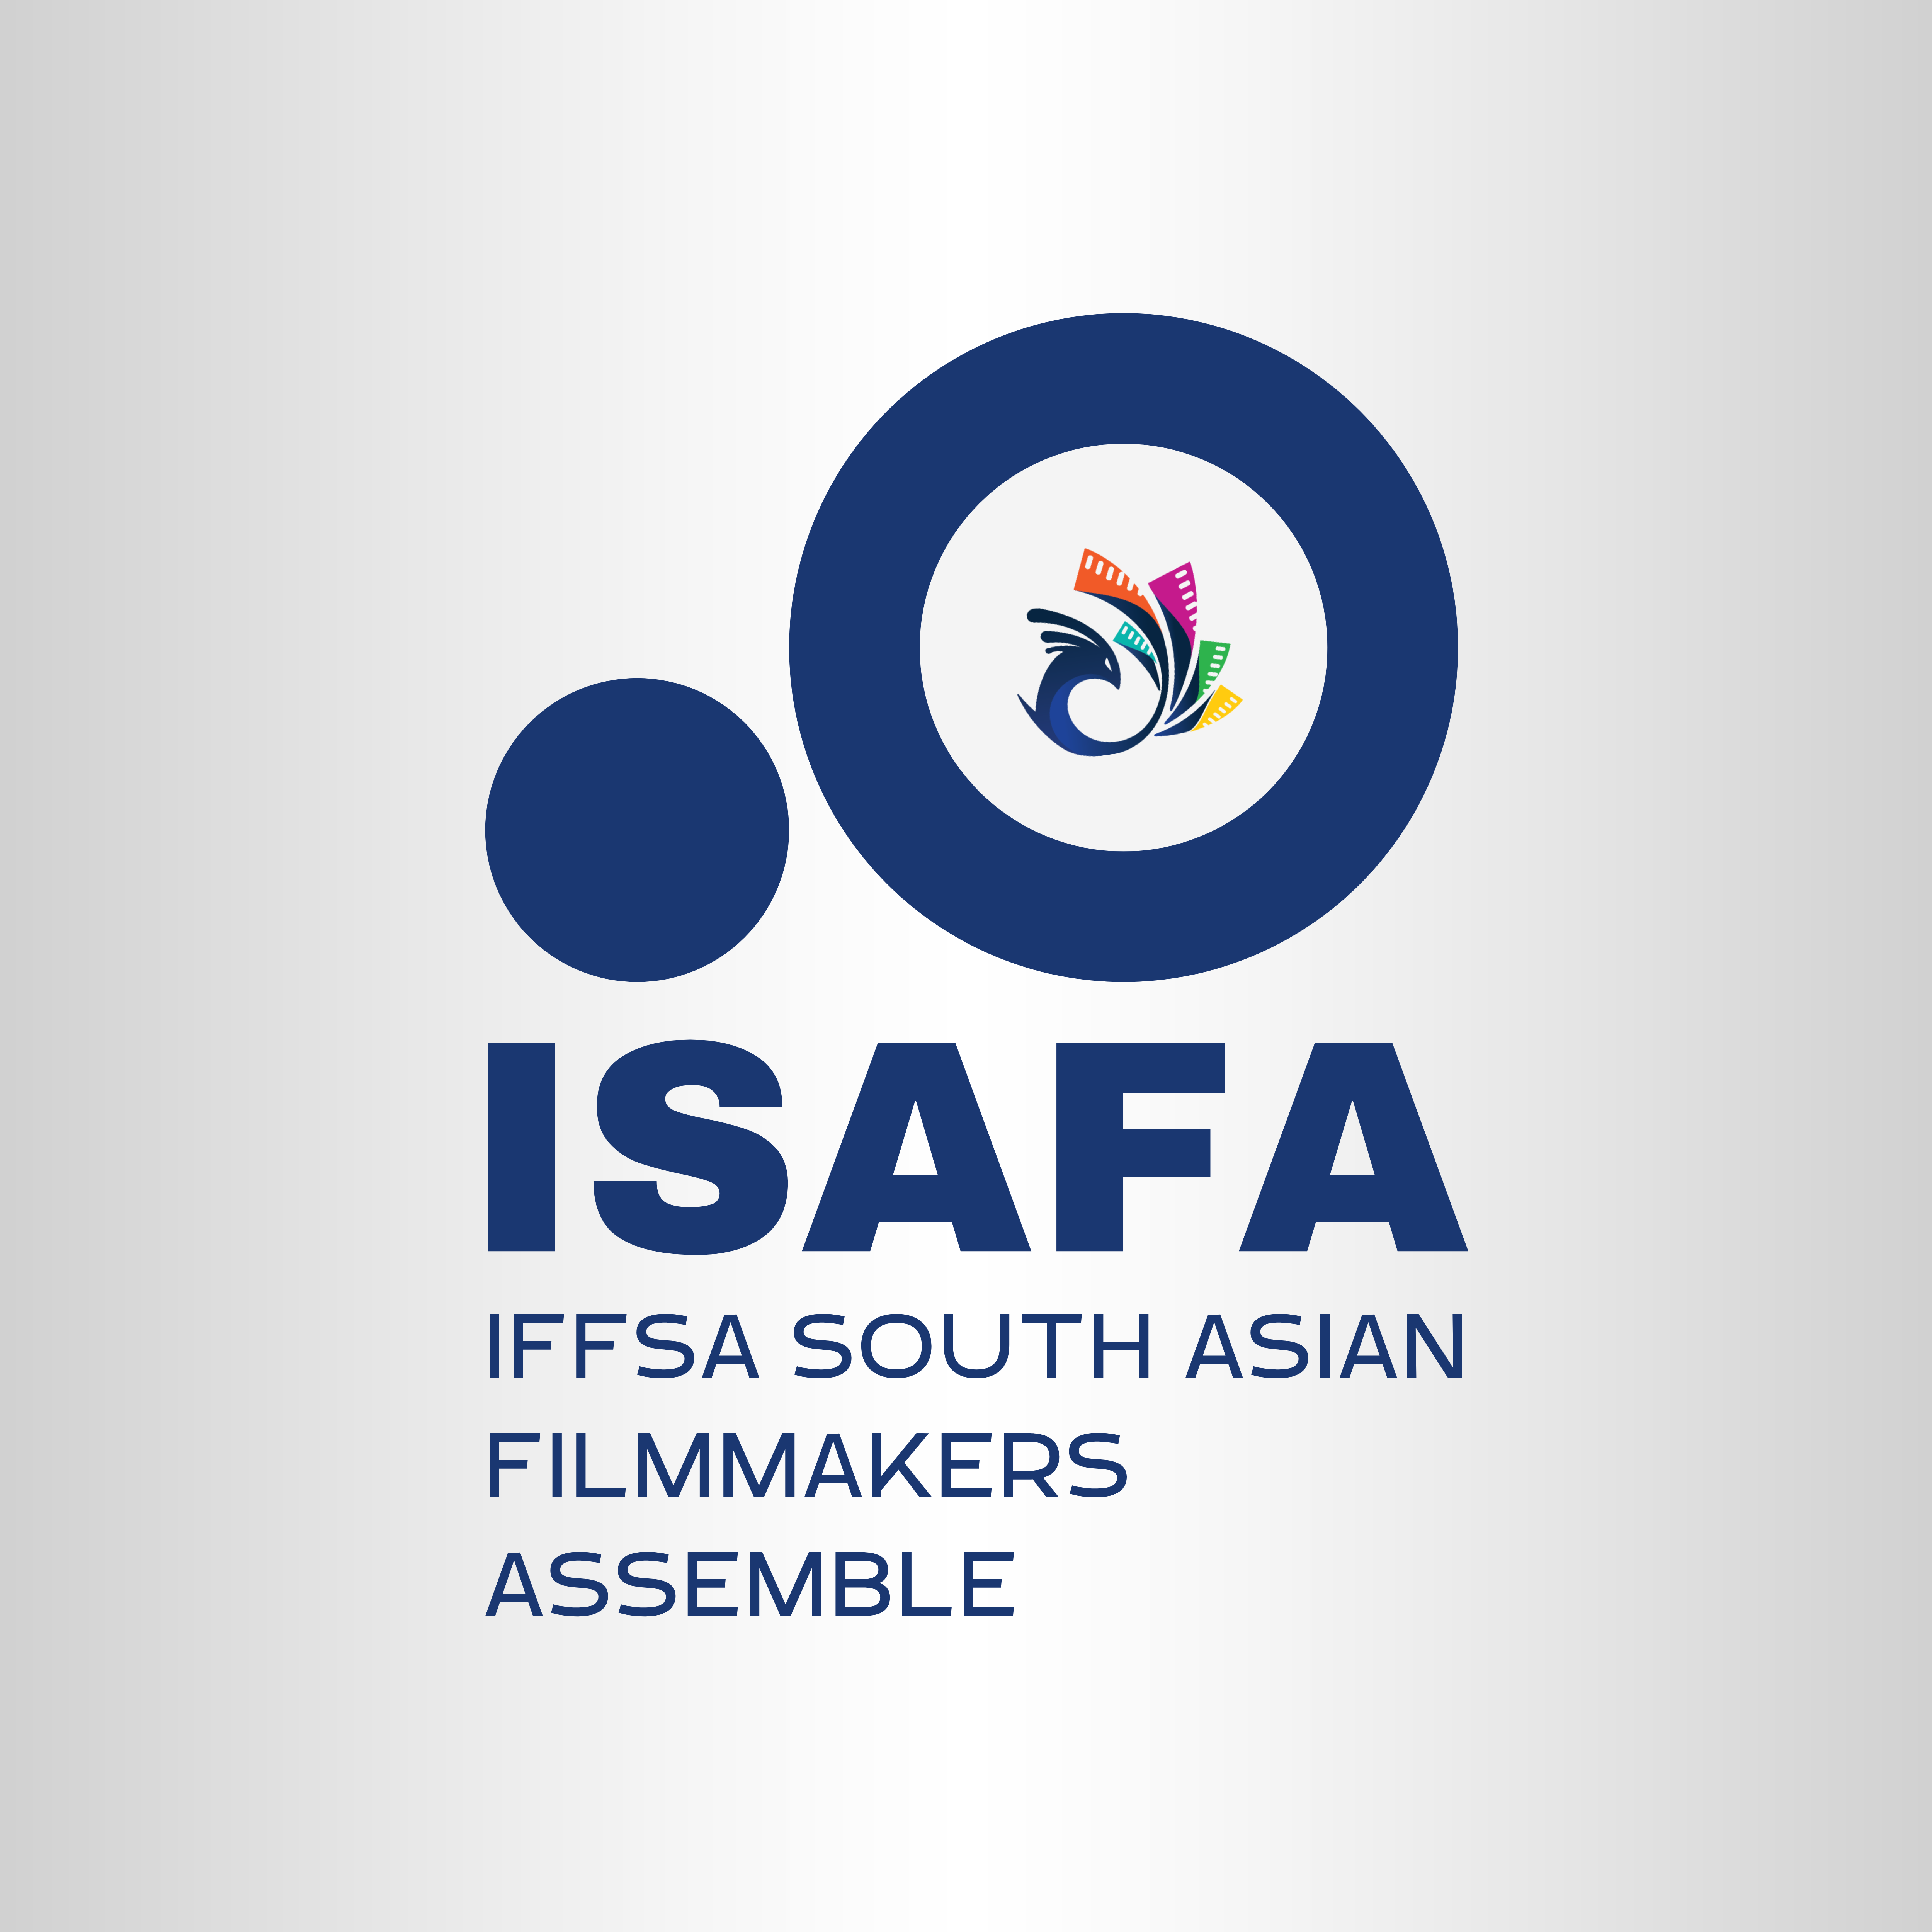 IFFSA SOUTH ASIAN FILMMAKERS ASSEMBLE